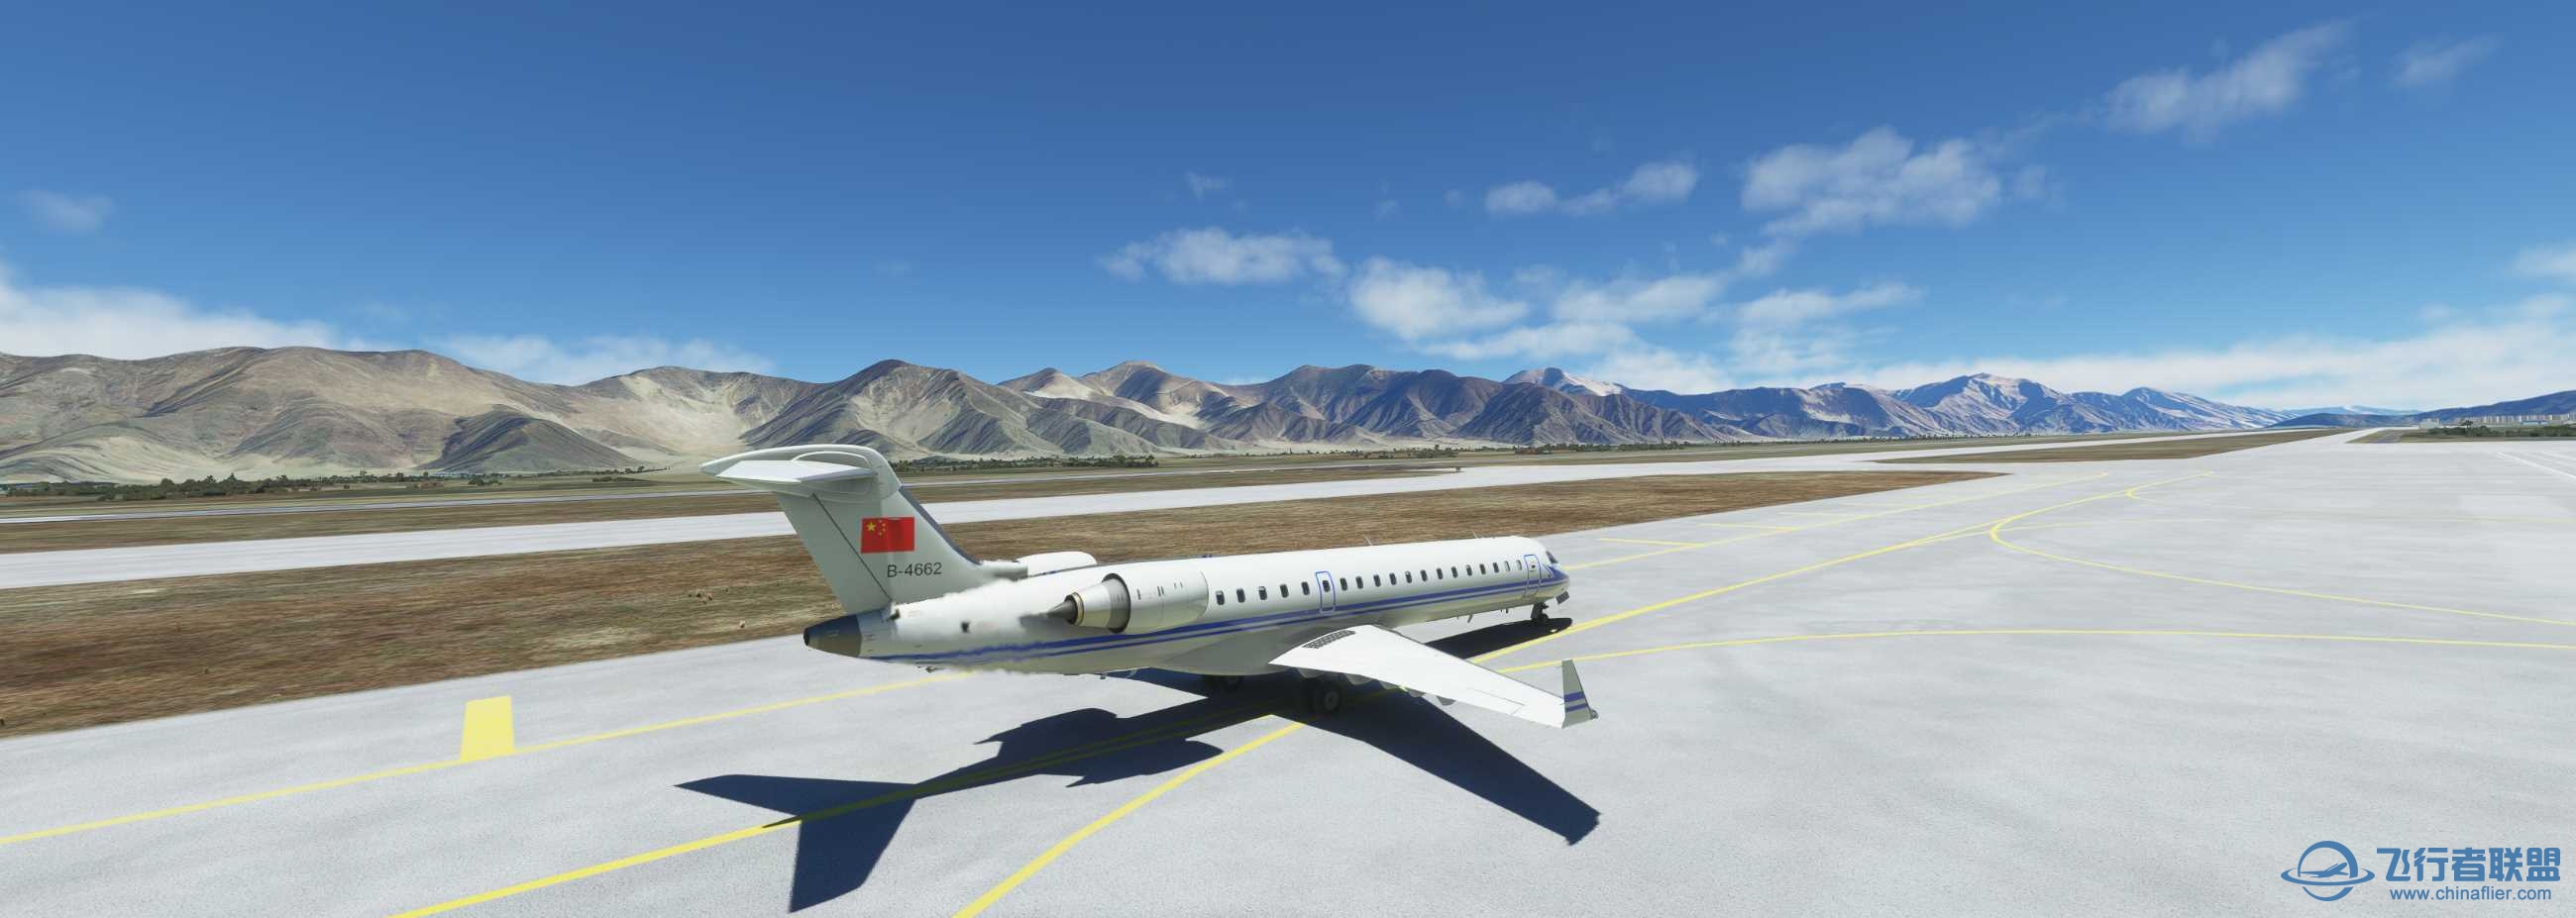 CRJ-700空军涂装 拉萨到香港-2621 